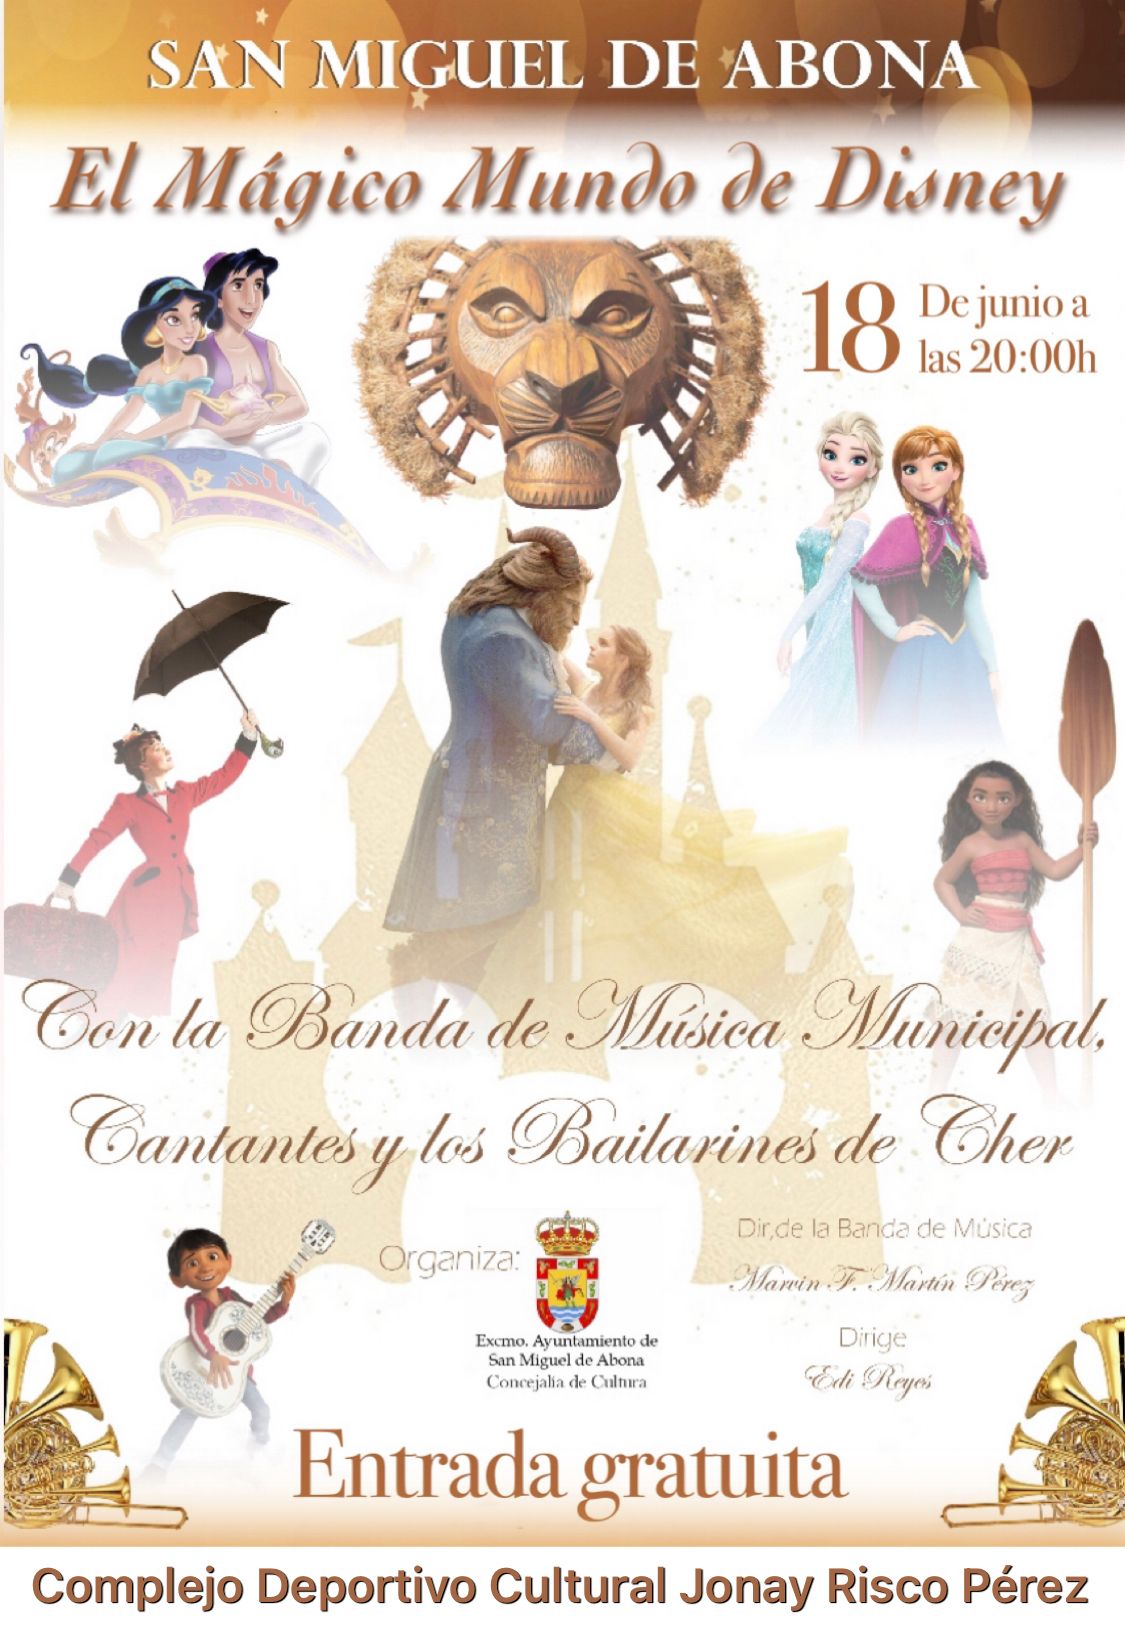 El mágico mundo de Disney llega a San Miguel de Abona